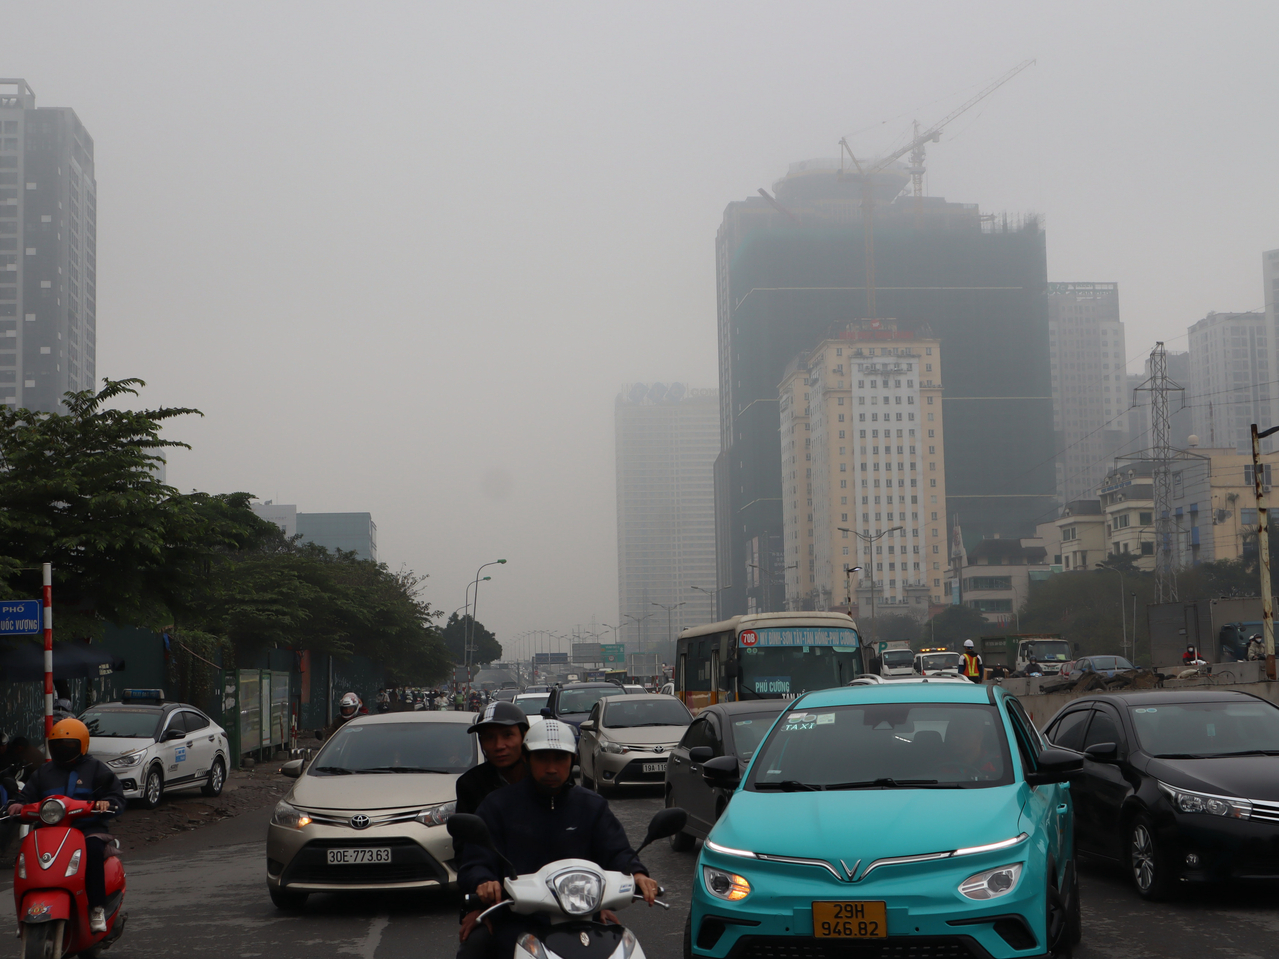 越南首都河内市共有650多万辆摩托车，被视为主要的空气污染源之一。图摄于4日上午10时22分，汽机车驾驶们背后的天空一片灰蒙蒙，当时空气品质指标（AQI）逼近「非常不健康」程度。中央社